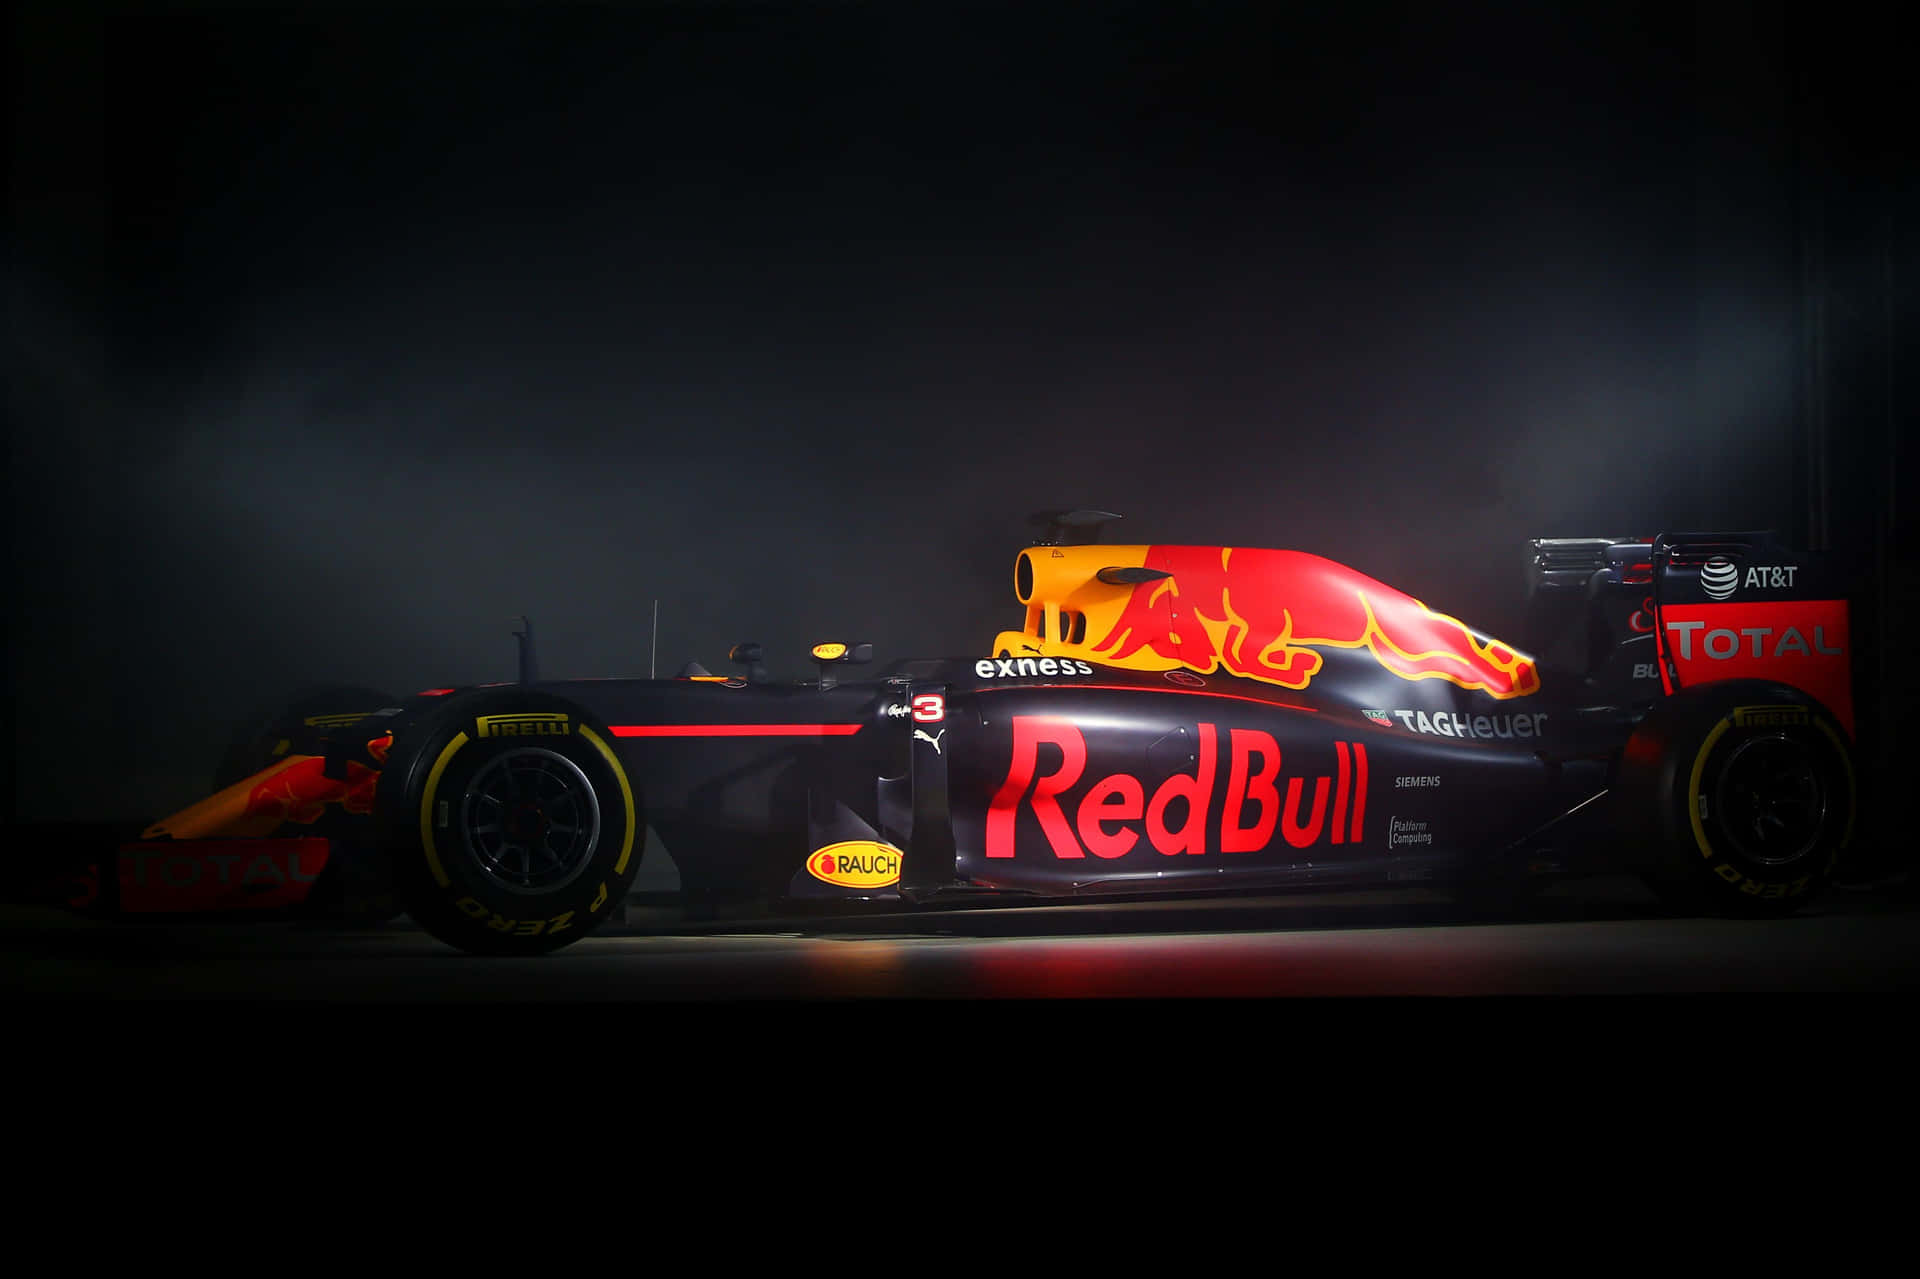 Red Bull Racing Car In The Dark Wallpaper